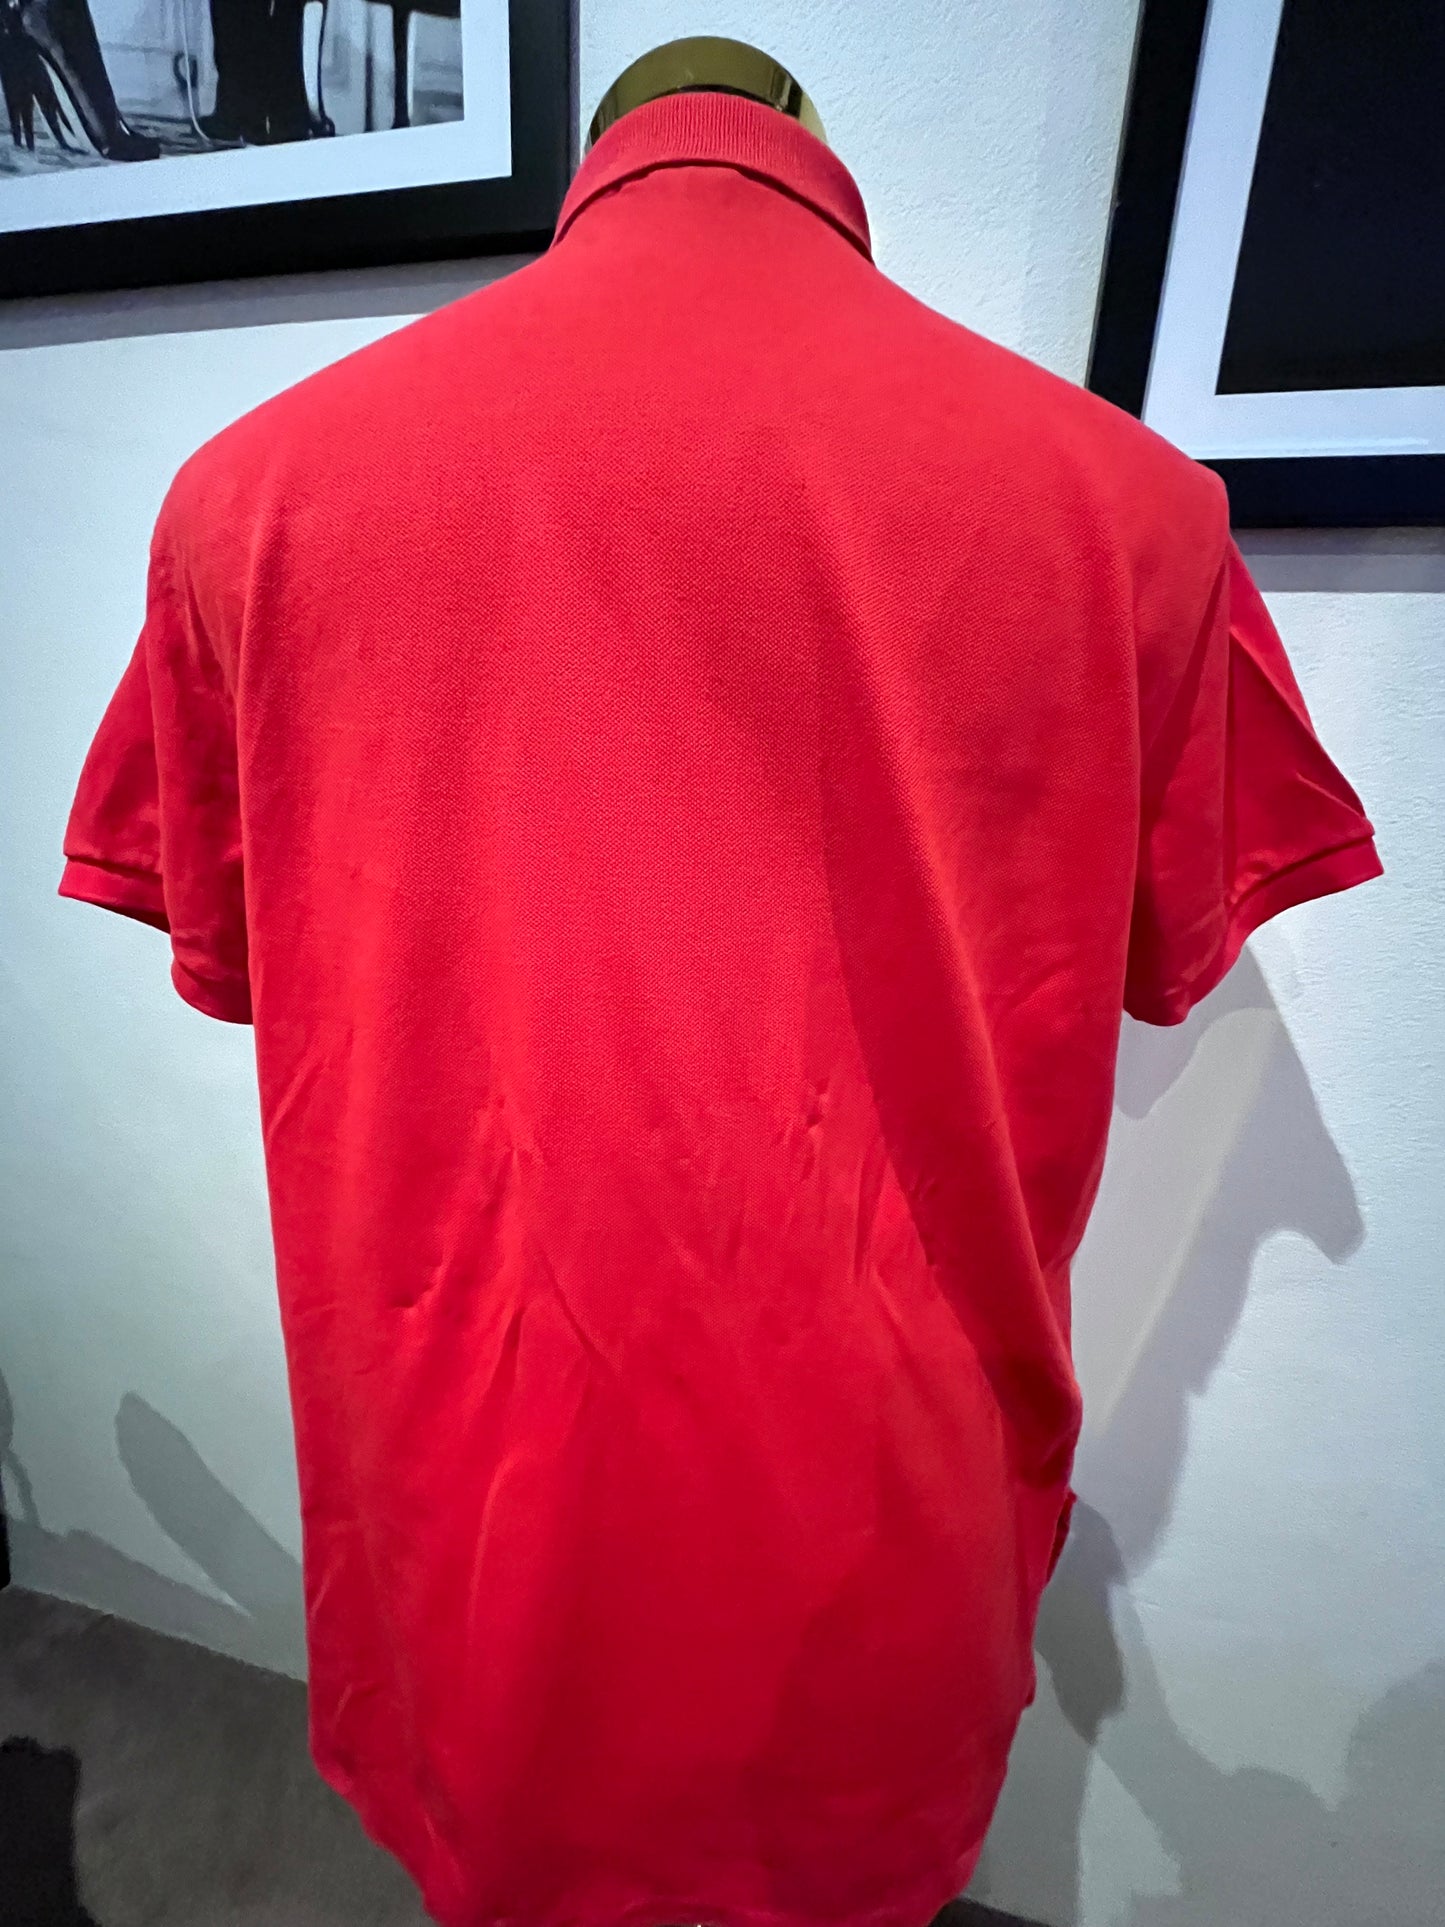 Ralph Lauren 100% Cotton Red Polo Shirt Size Medium Regular Fit